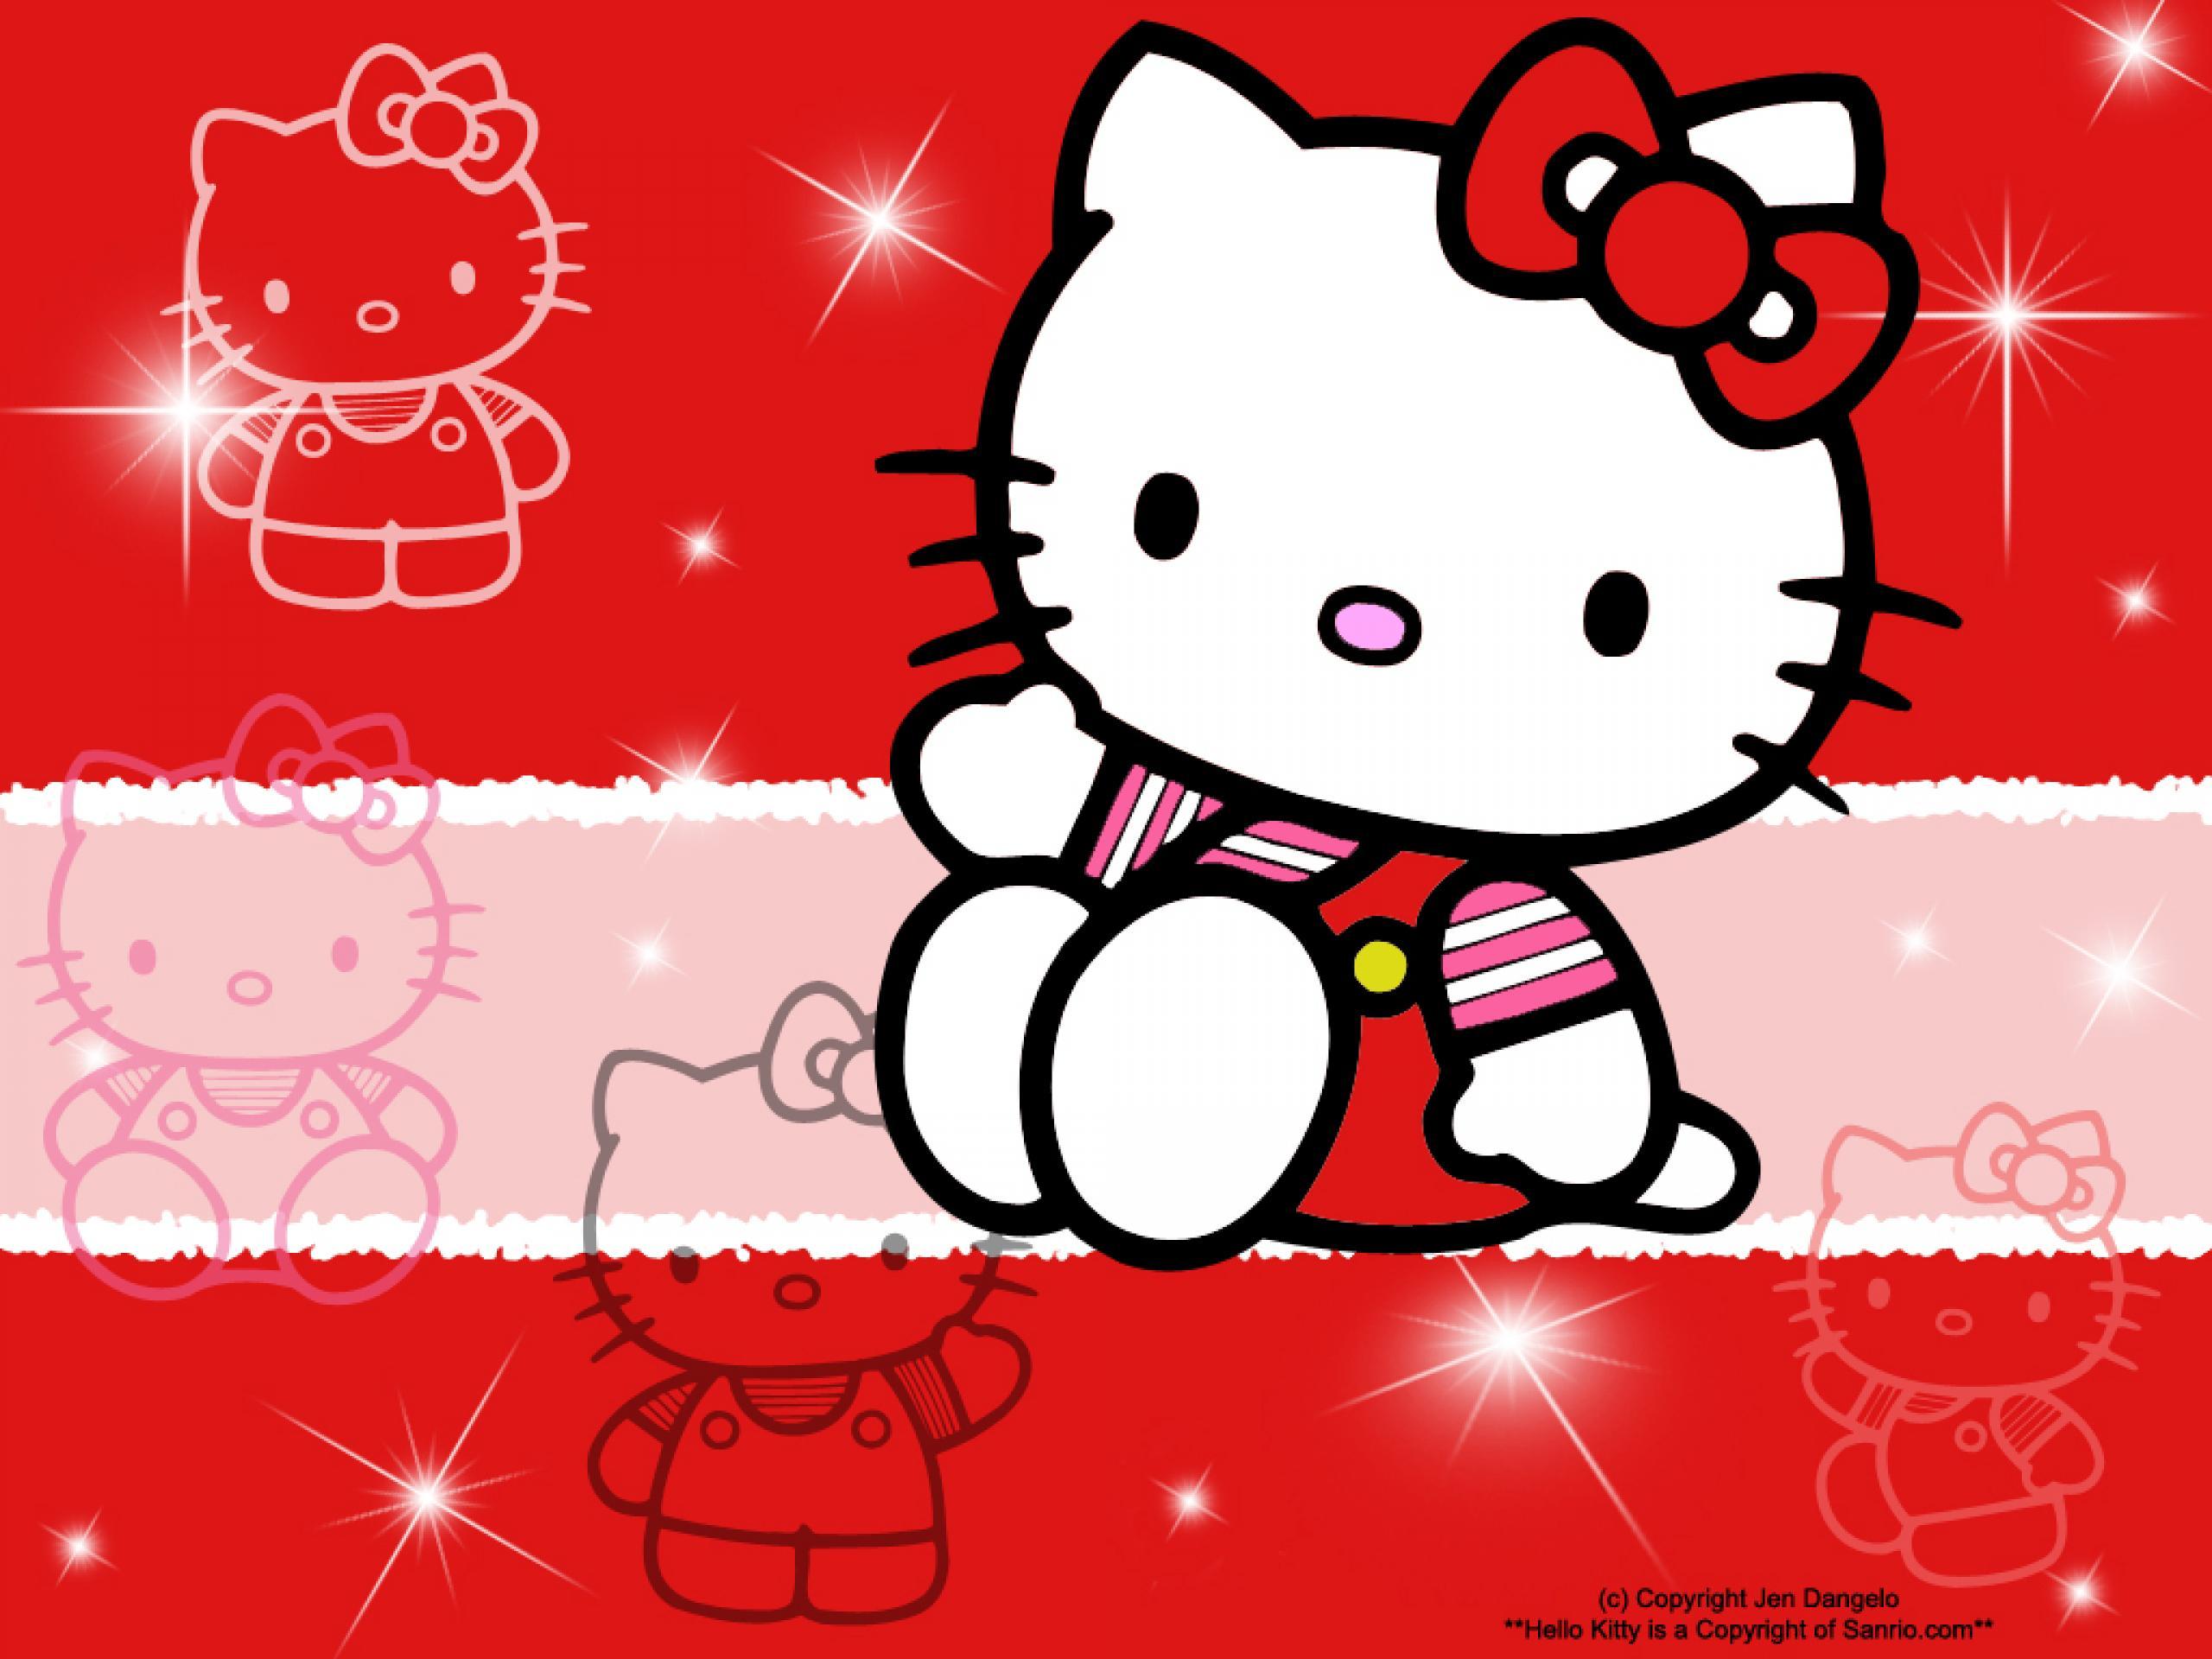 Hình nền Red Hello Kitty quá đáng yêu để bỏ qua! Hãy thưởng thức chiếc điện thoại của bạn với gam màu cực kì tươi sáng và rực rỡ!